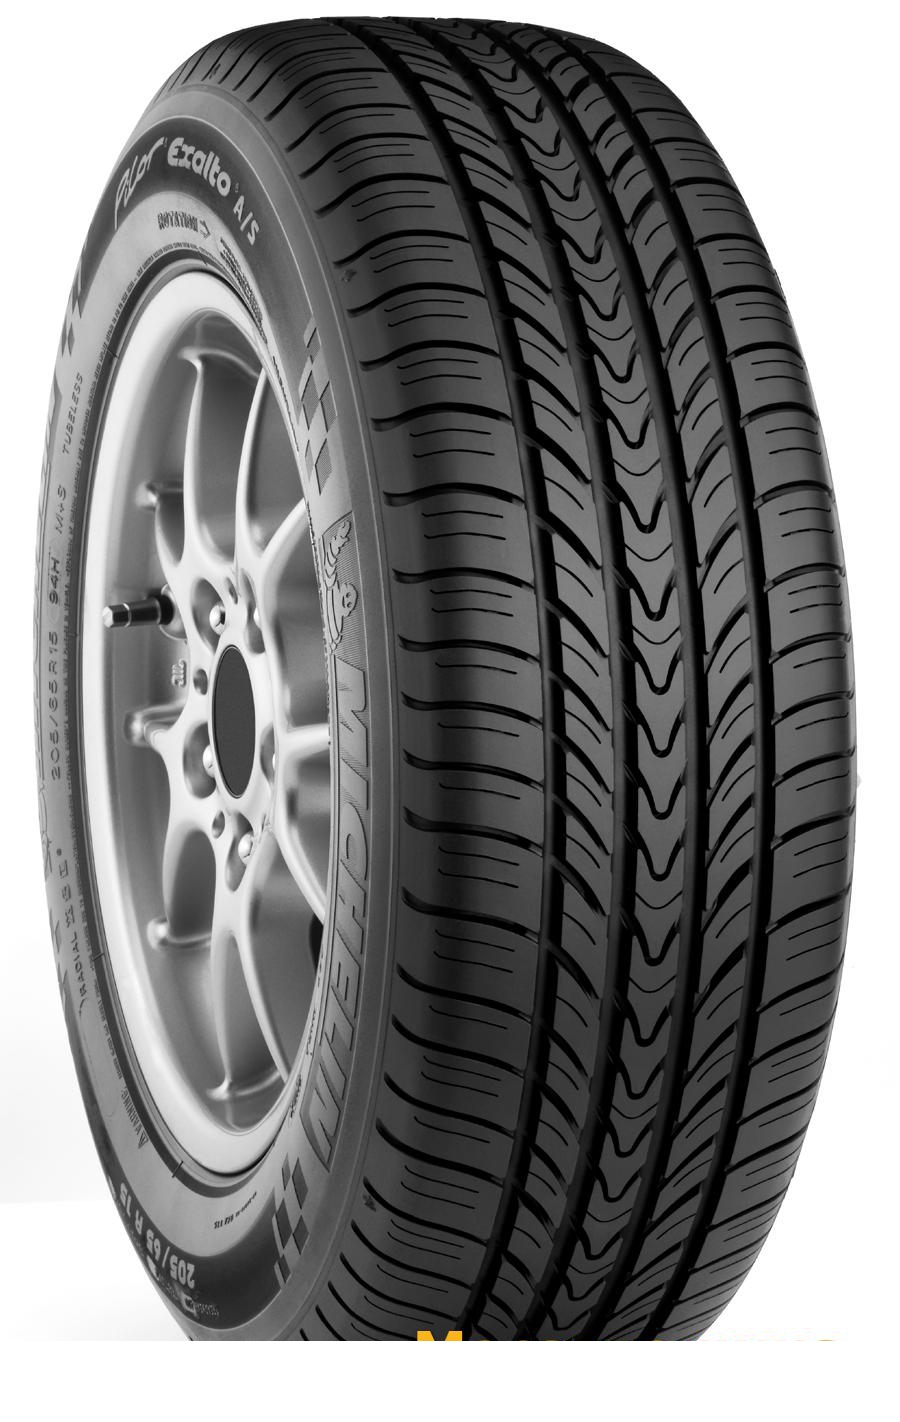 Tire Michelin Pilot Exalto A/S 195/60R15 88H - picture, photo, image